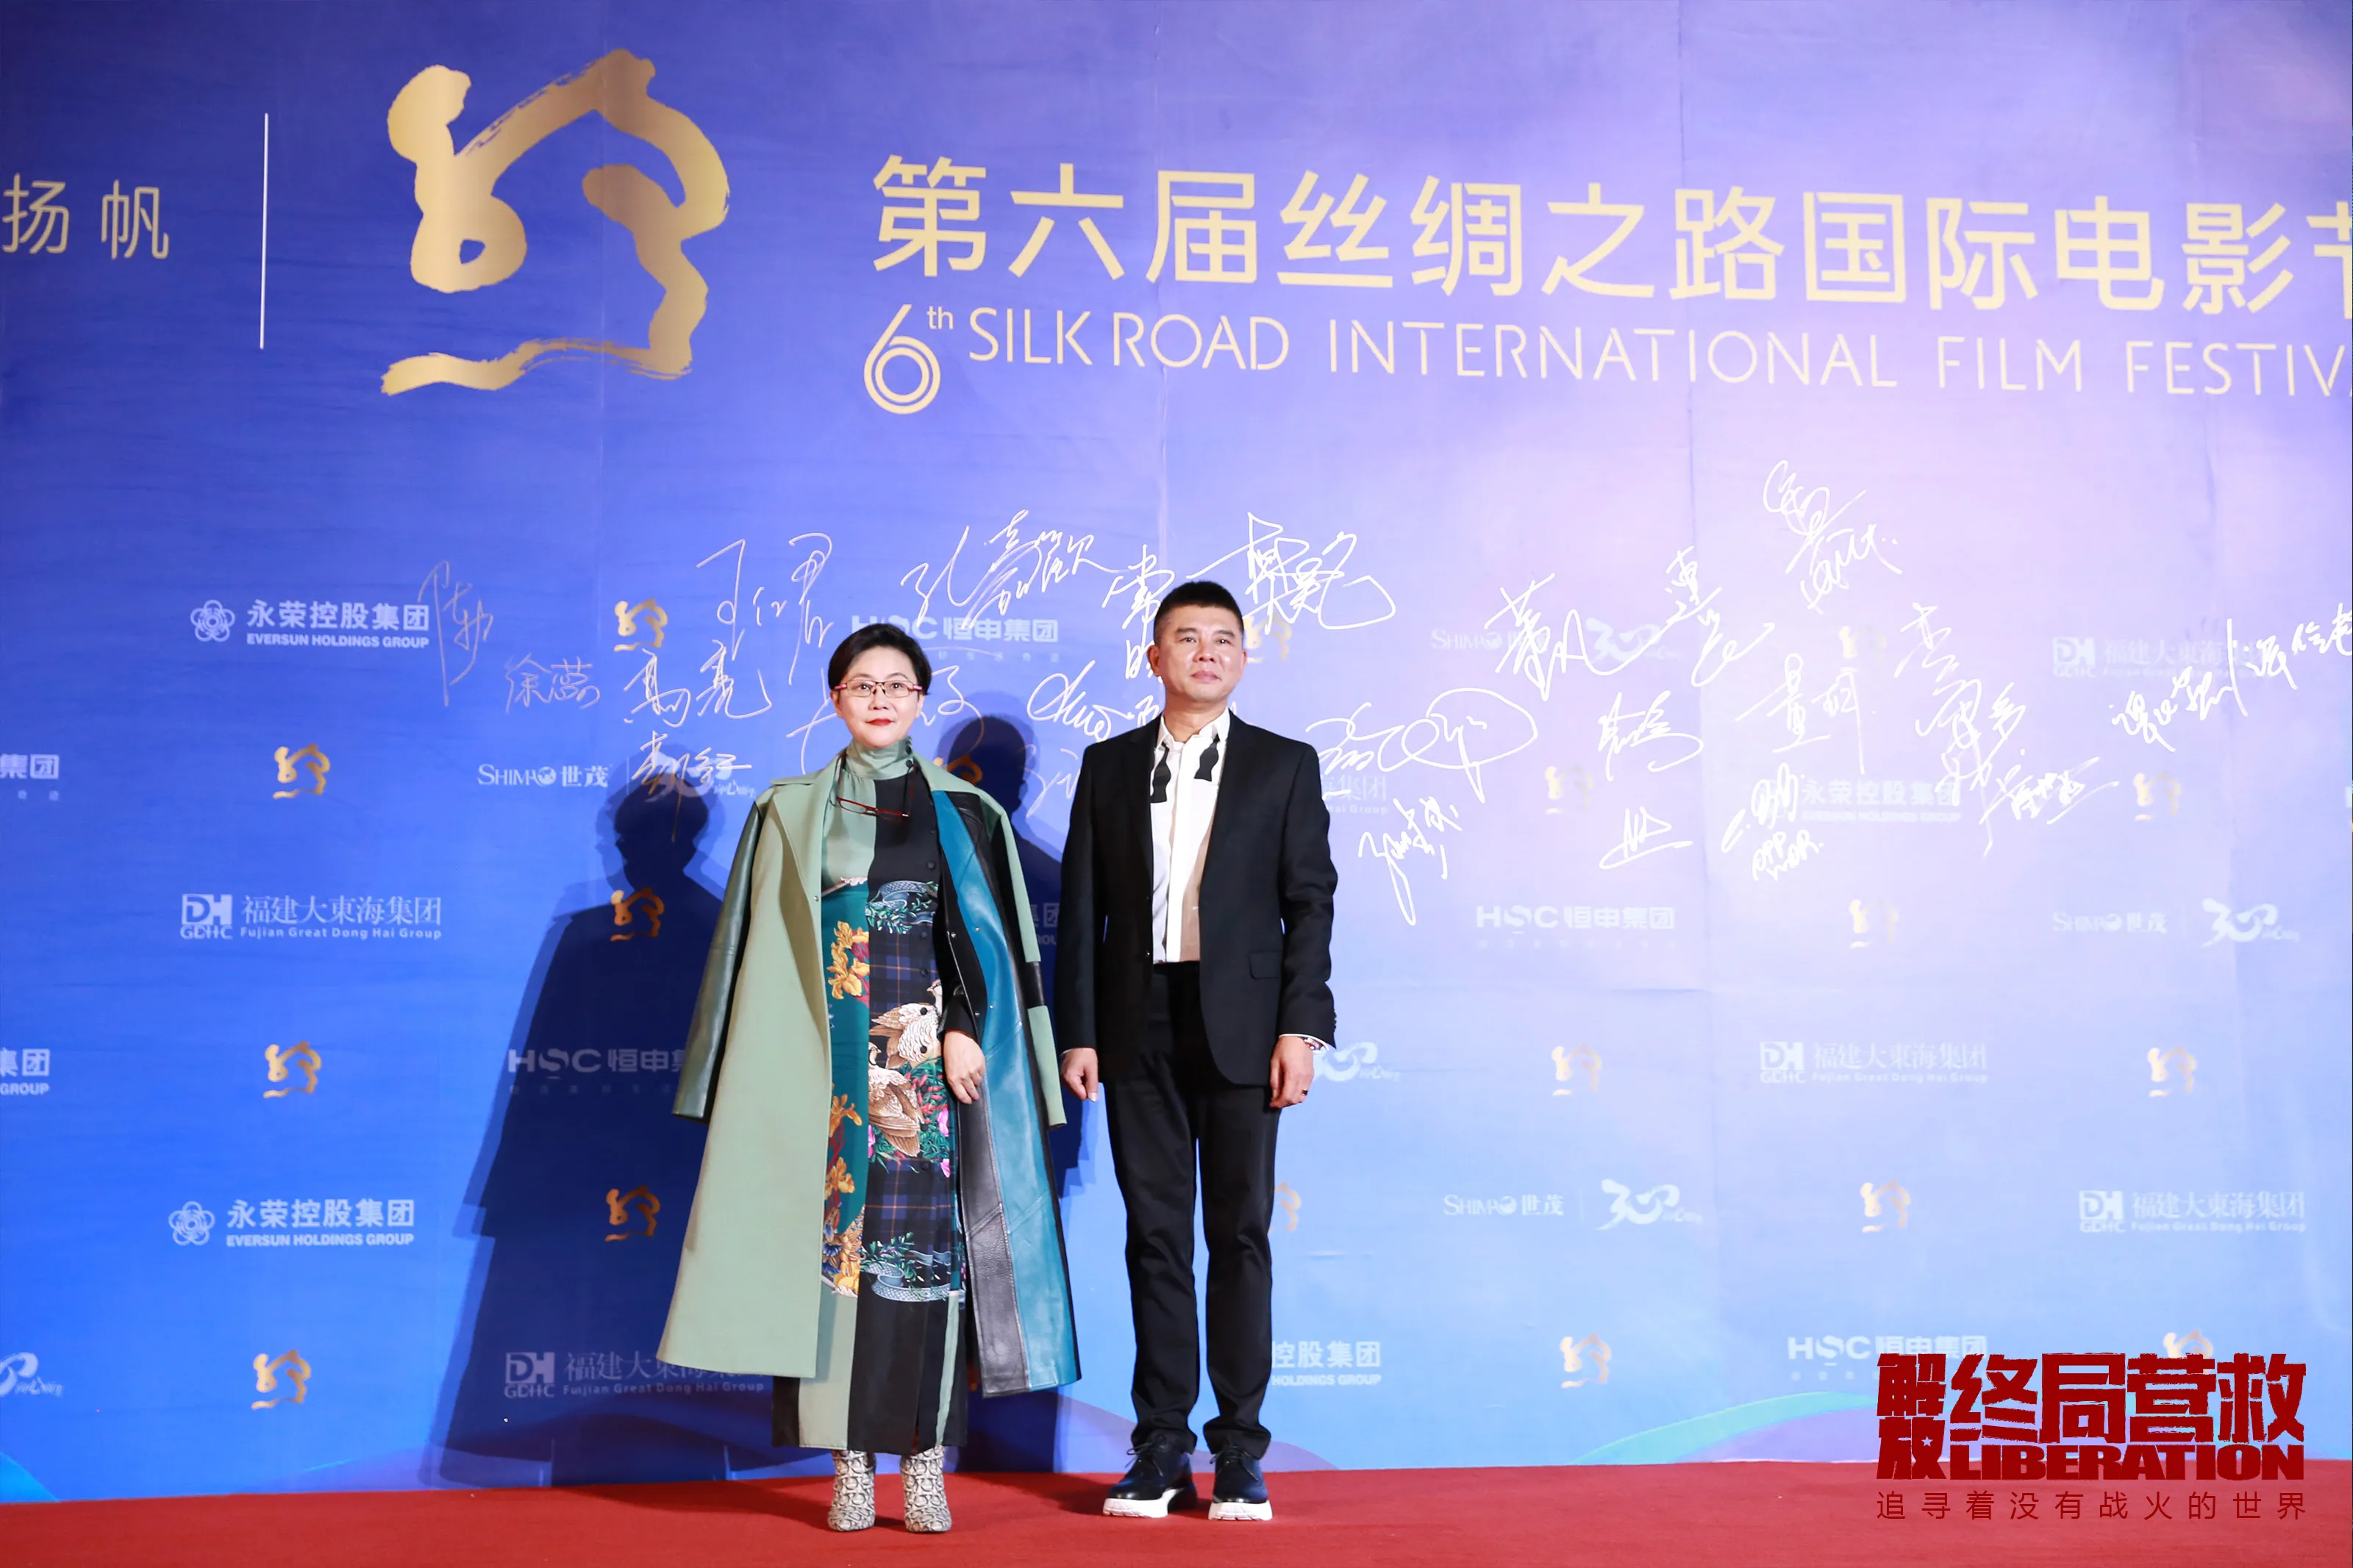 总监制兼总导演 Li Shaohong 和导演 Chang Xiao Yang 亮相红毯-3.jpg